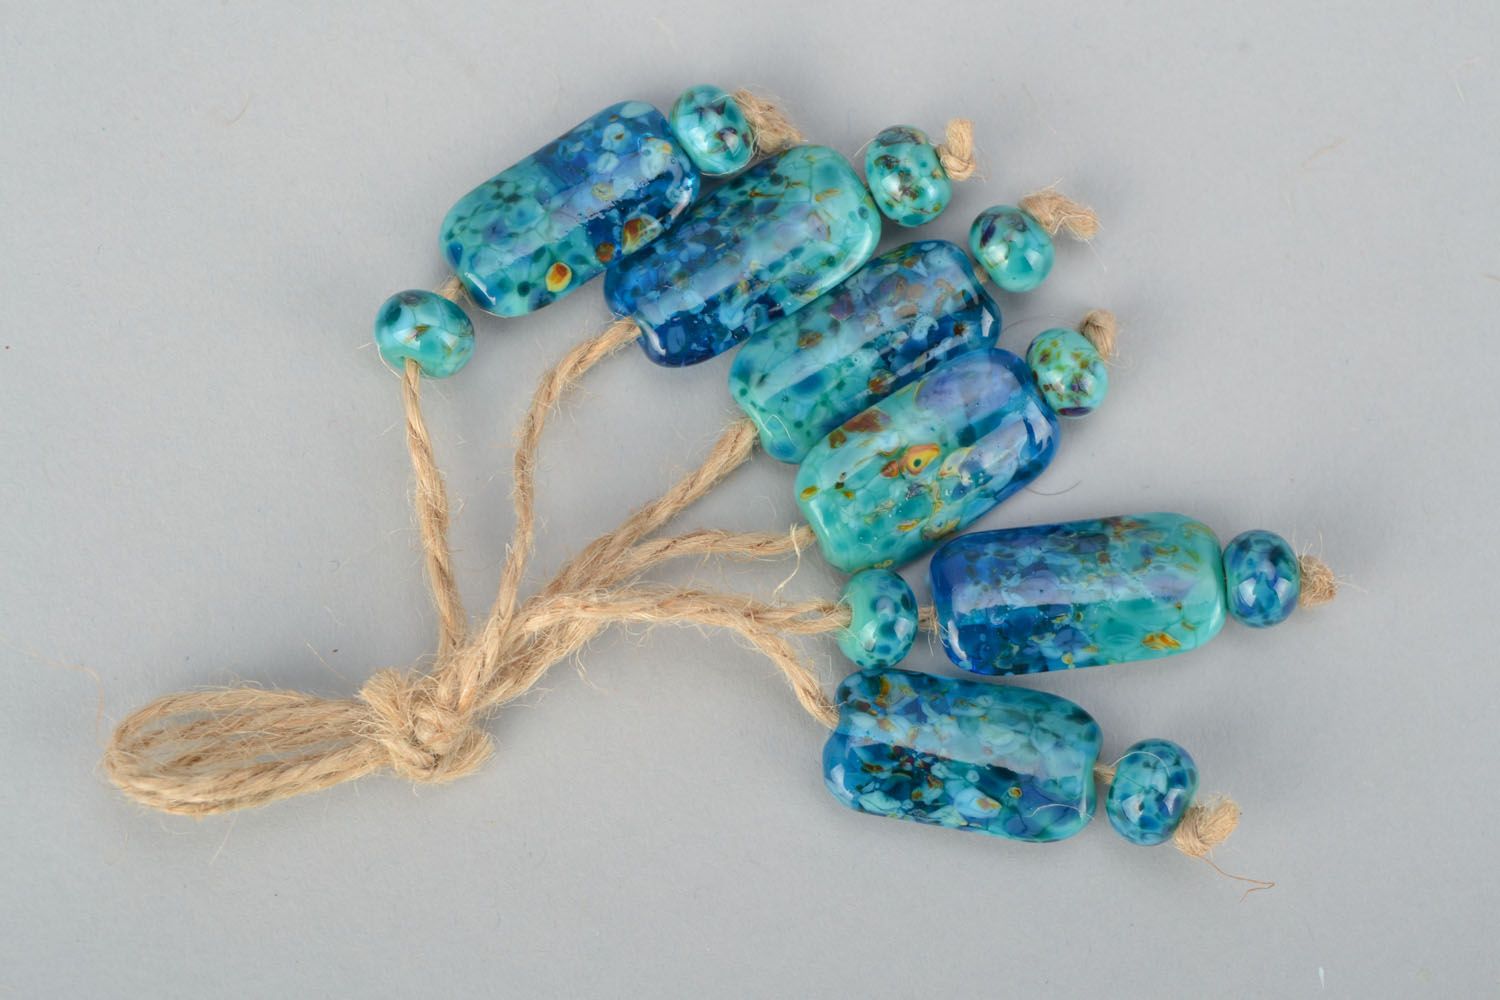 Beautiful beads made of glass photo 1